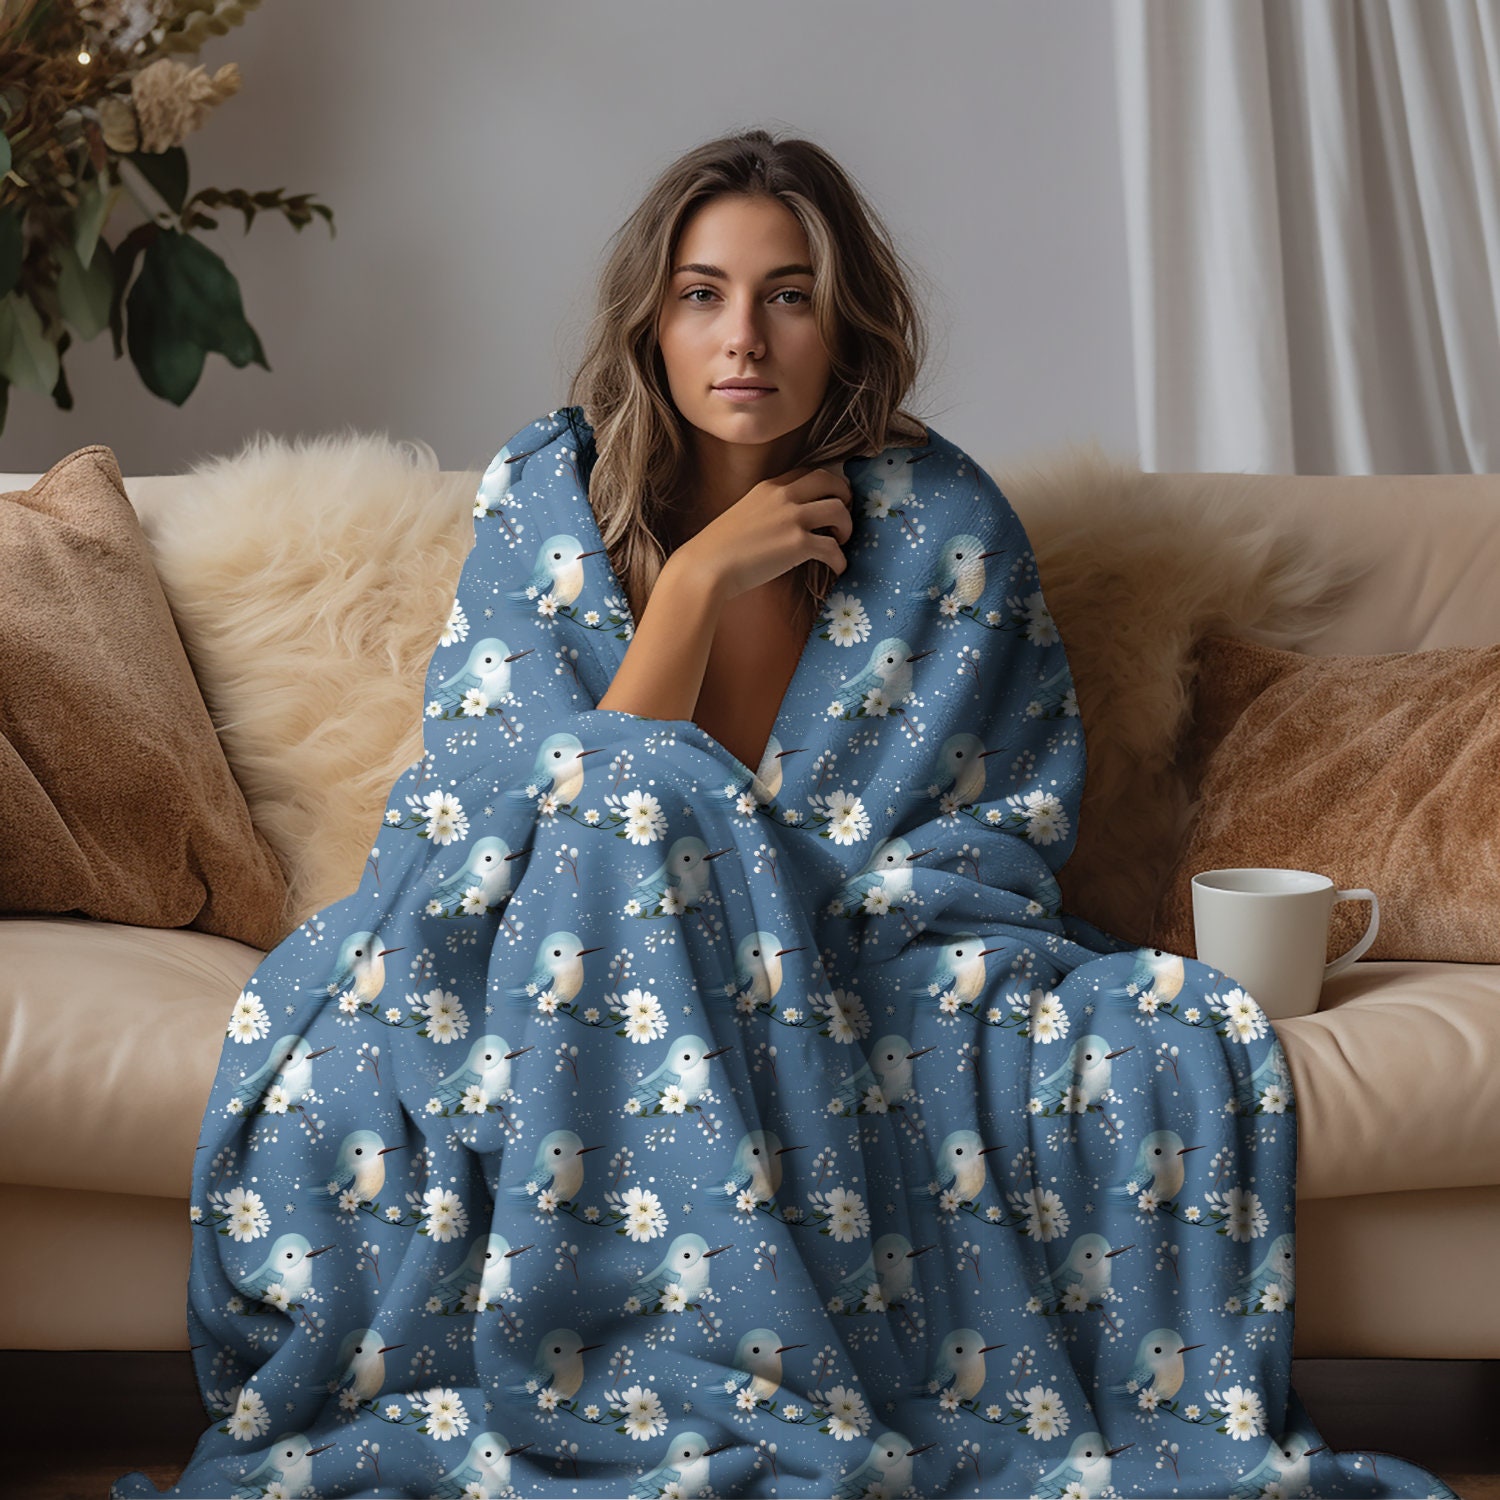 Ryan Reynolds Fleece Blanket Throw Blanket Lightweight Super Soft Cozy  Luxury Bed Blanket Microfiber -s458